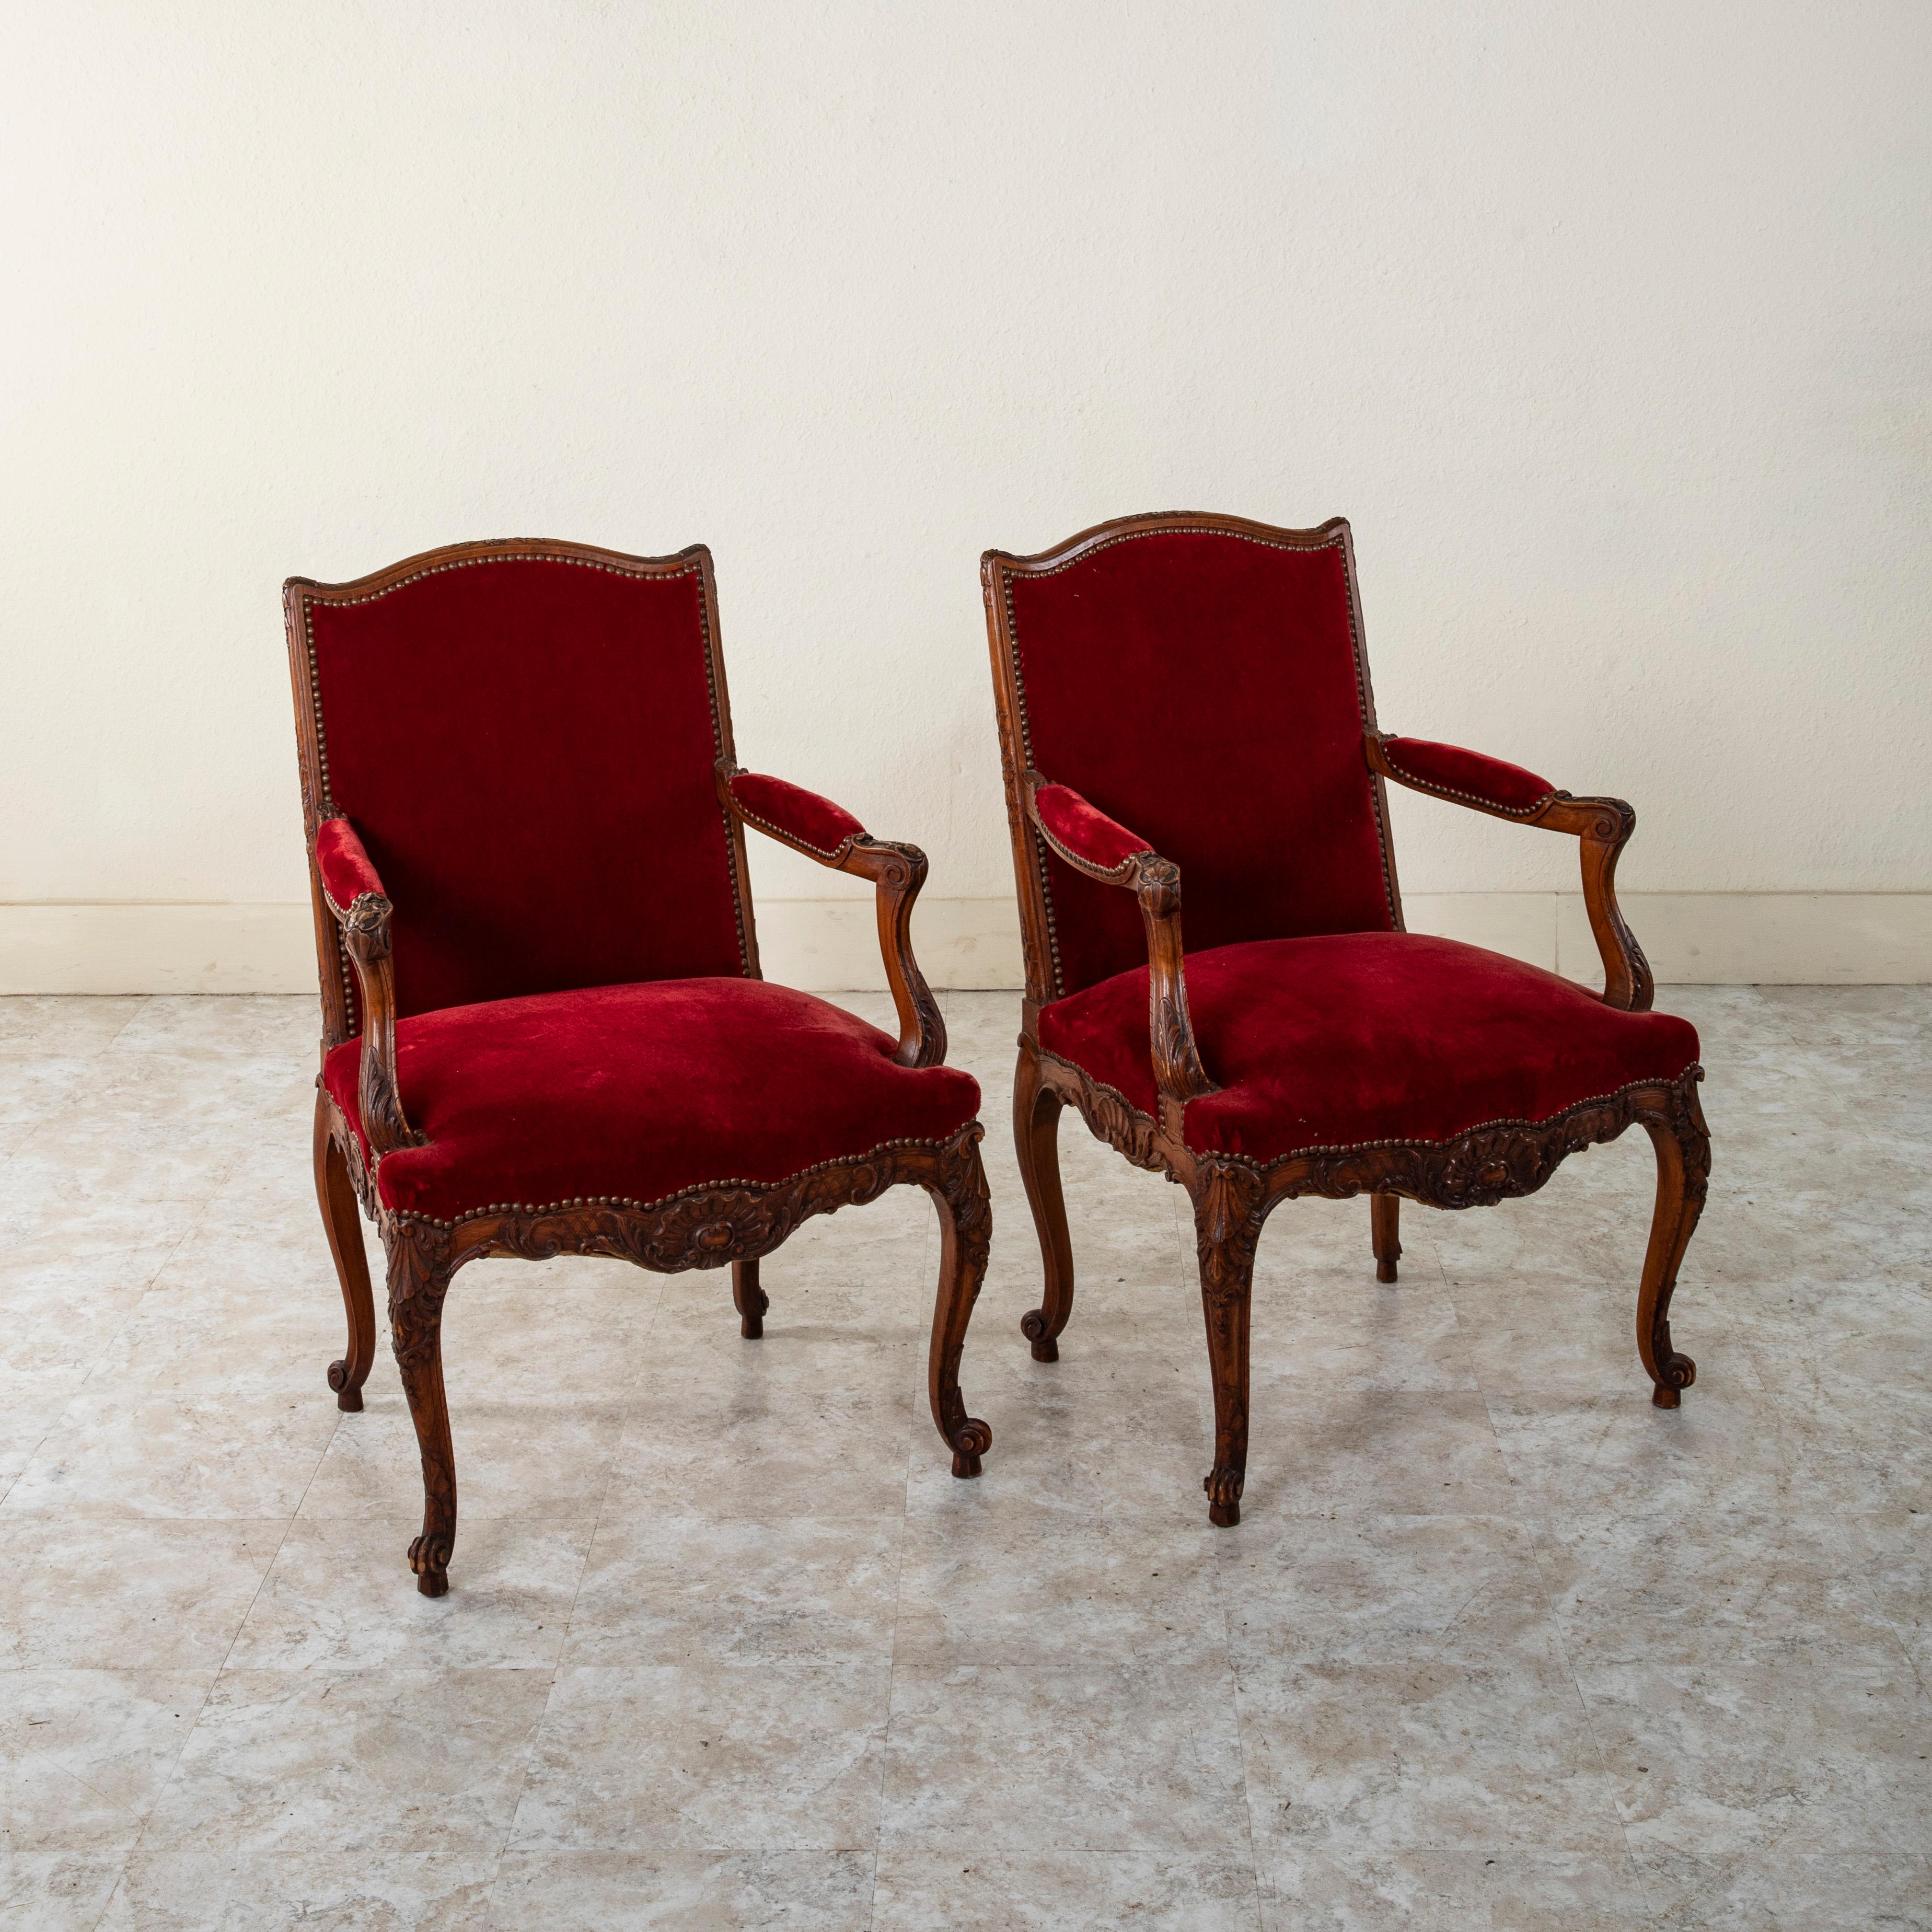 Dieses Paar Sessel aus Buchenholz im französischen Regency-Stil aus der Mitte des neunzehnten Jahrhunderts zeichnet sich durch handgeschnitzte Details aus symmetrischen Muscheln, Akanthusblättern und Blumen an der Oberseite der Sitzlehnen aus. Die